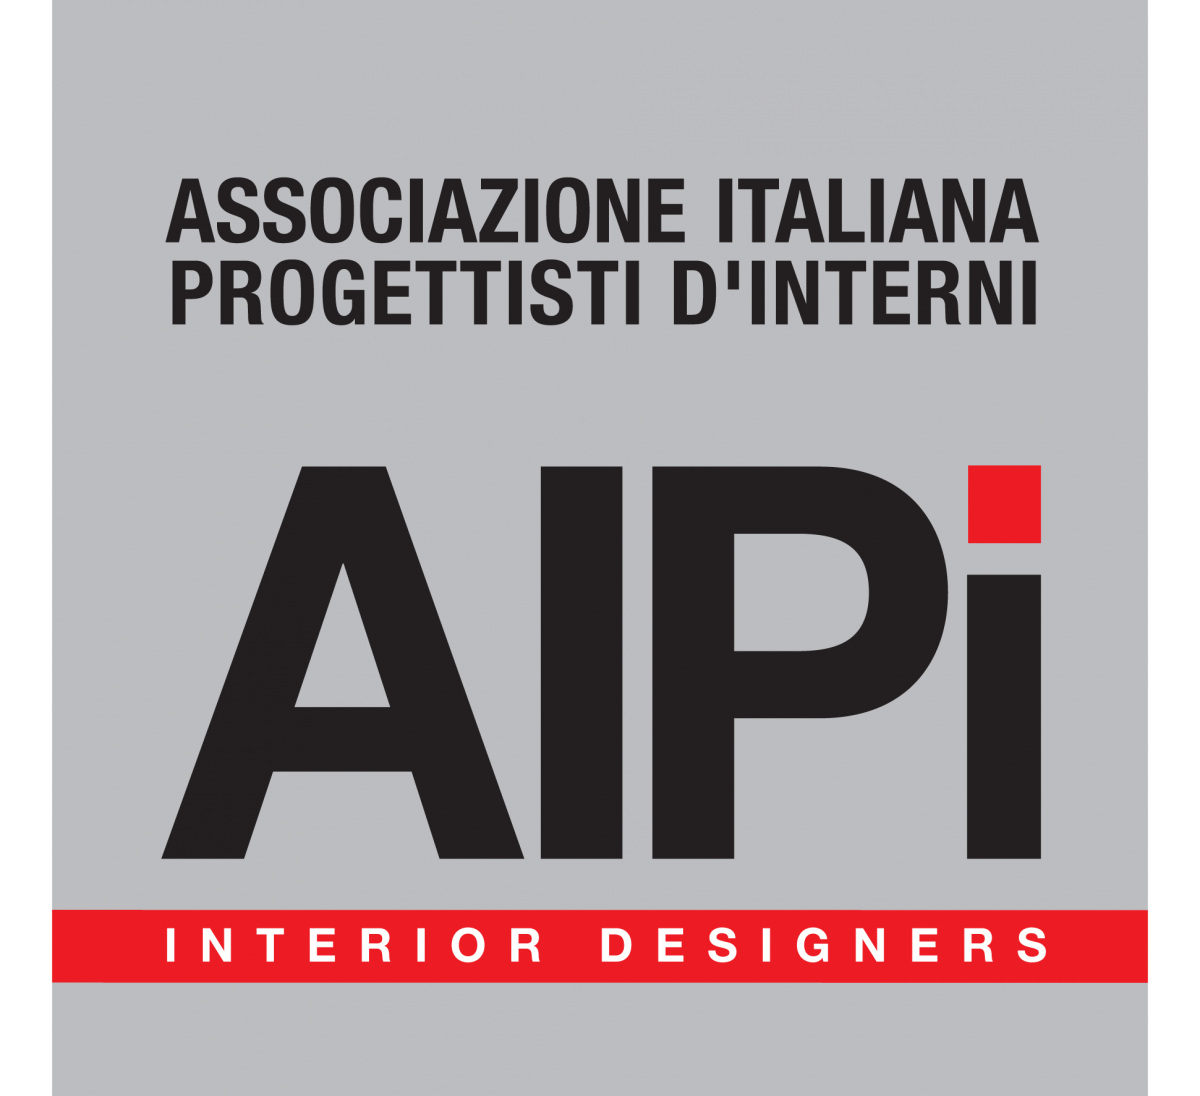 Assocoazione Italiana Progettisti D'Interni